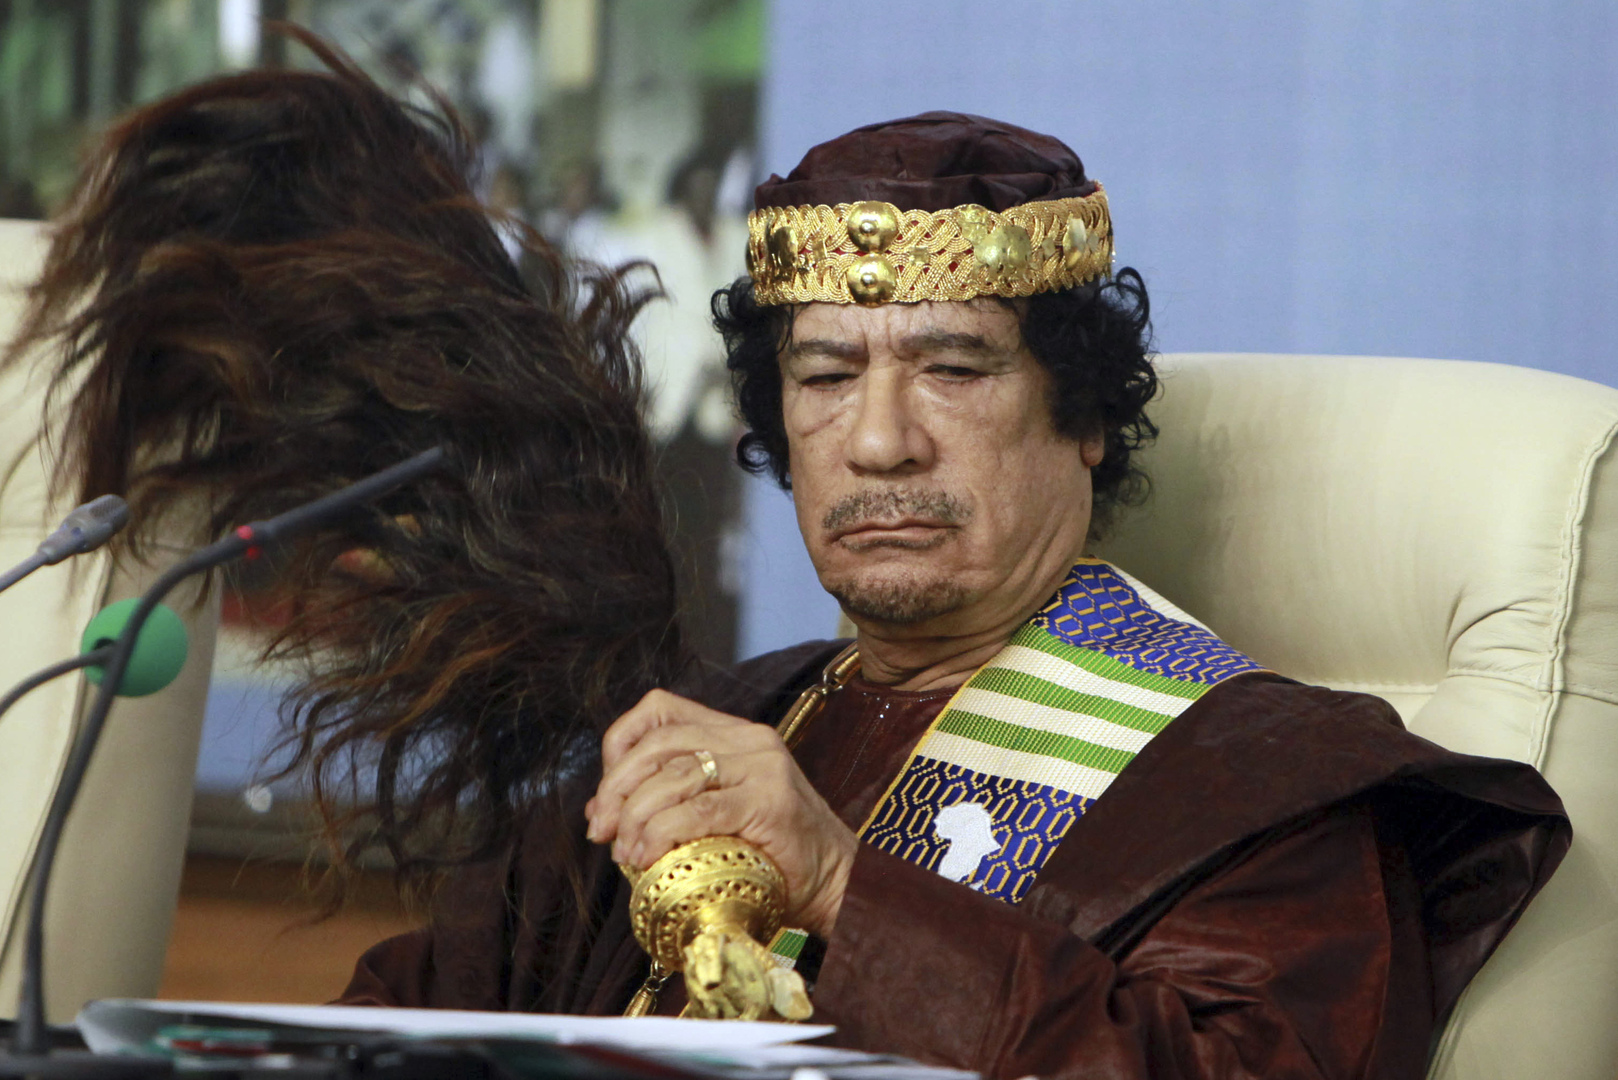 وثائق إسرائيلية: القذافي ضغط على السادات بغية إرجاء حرب أكتوبر